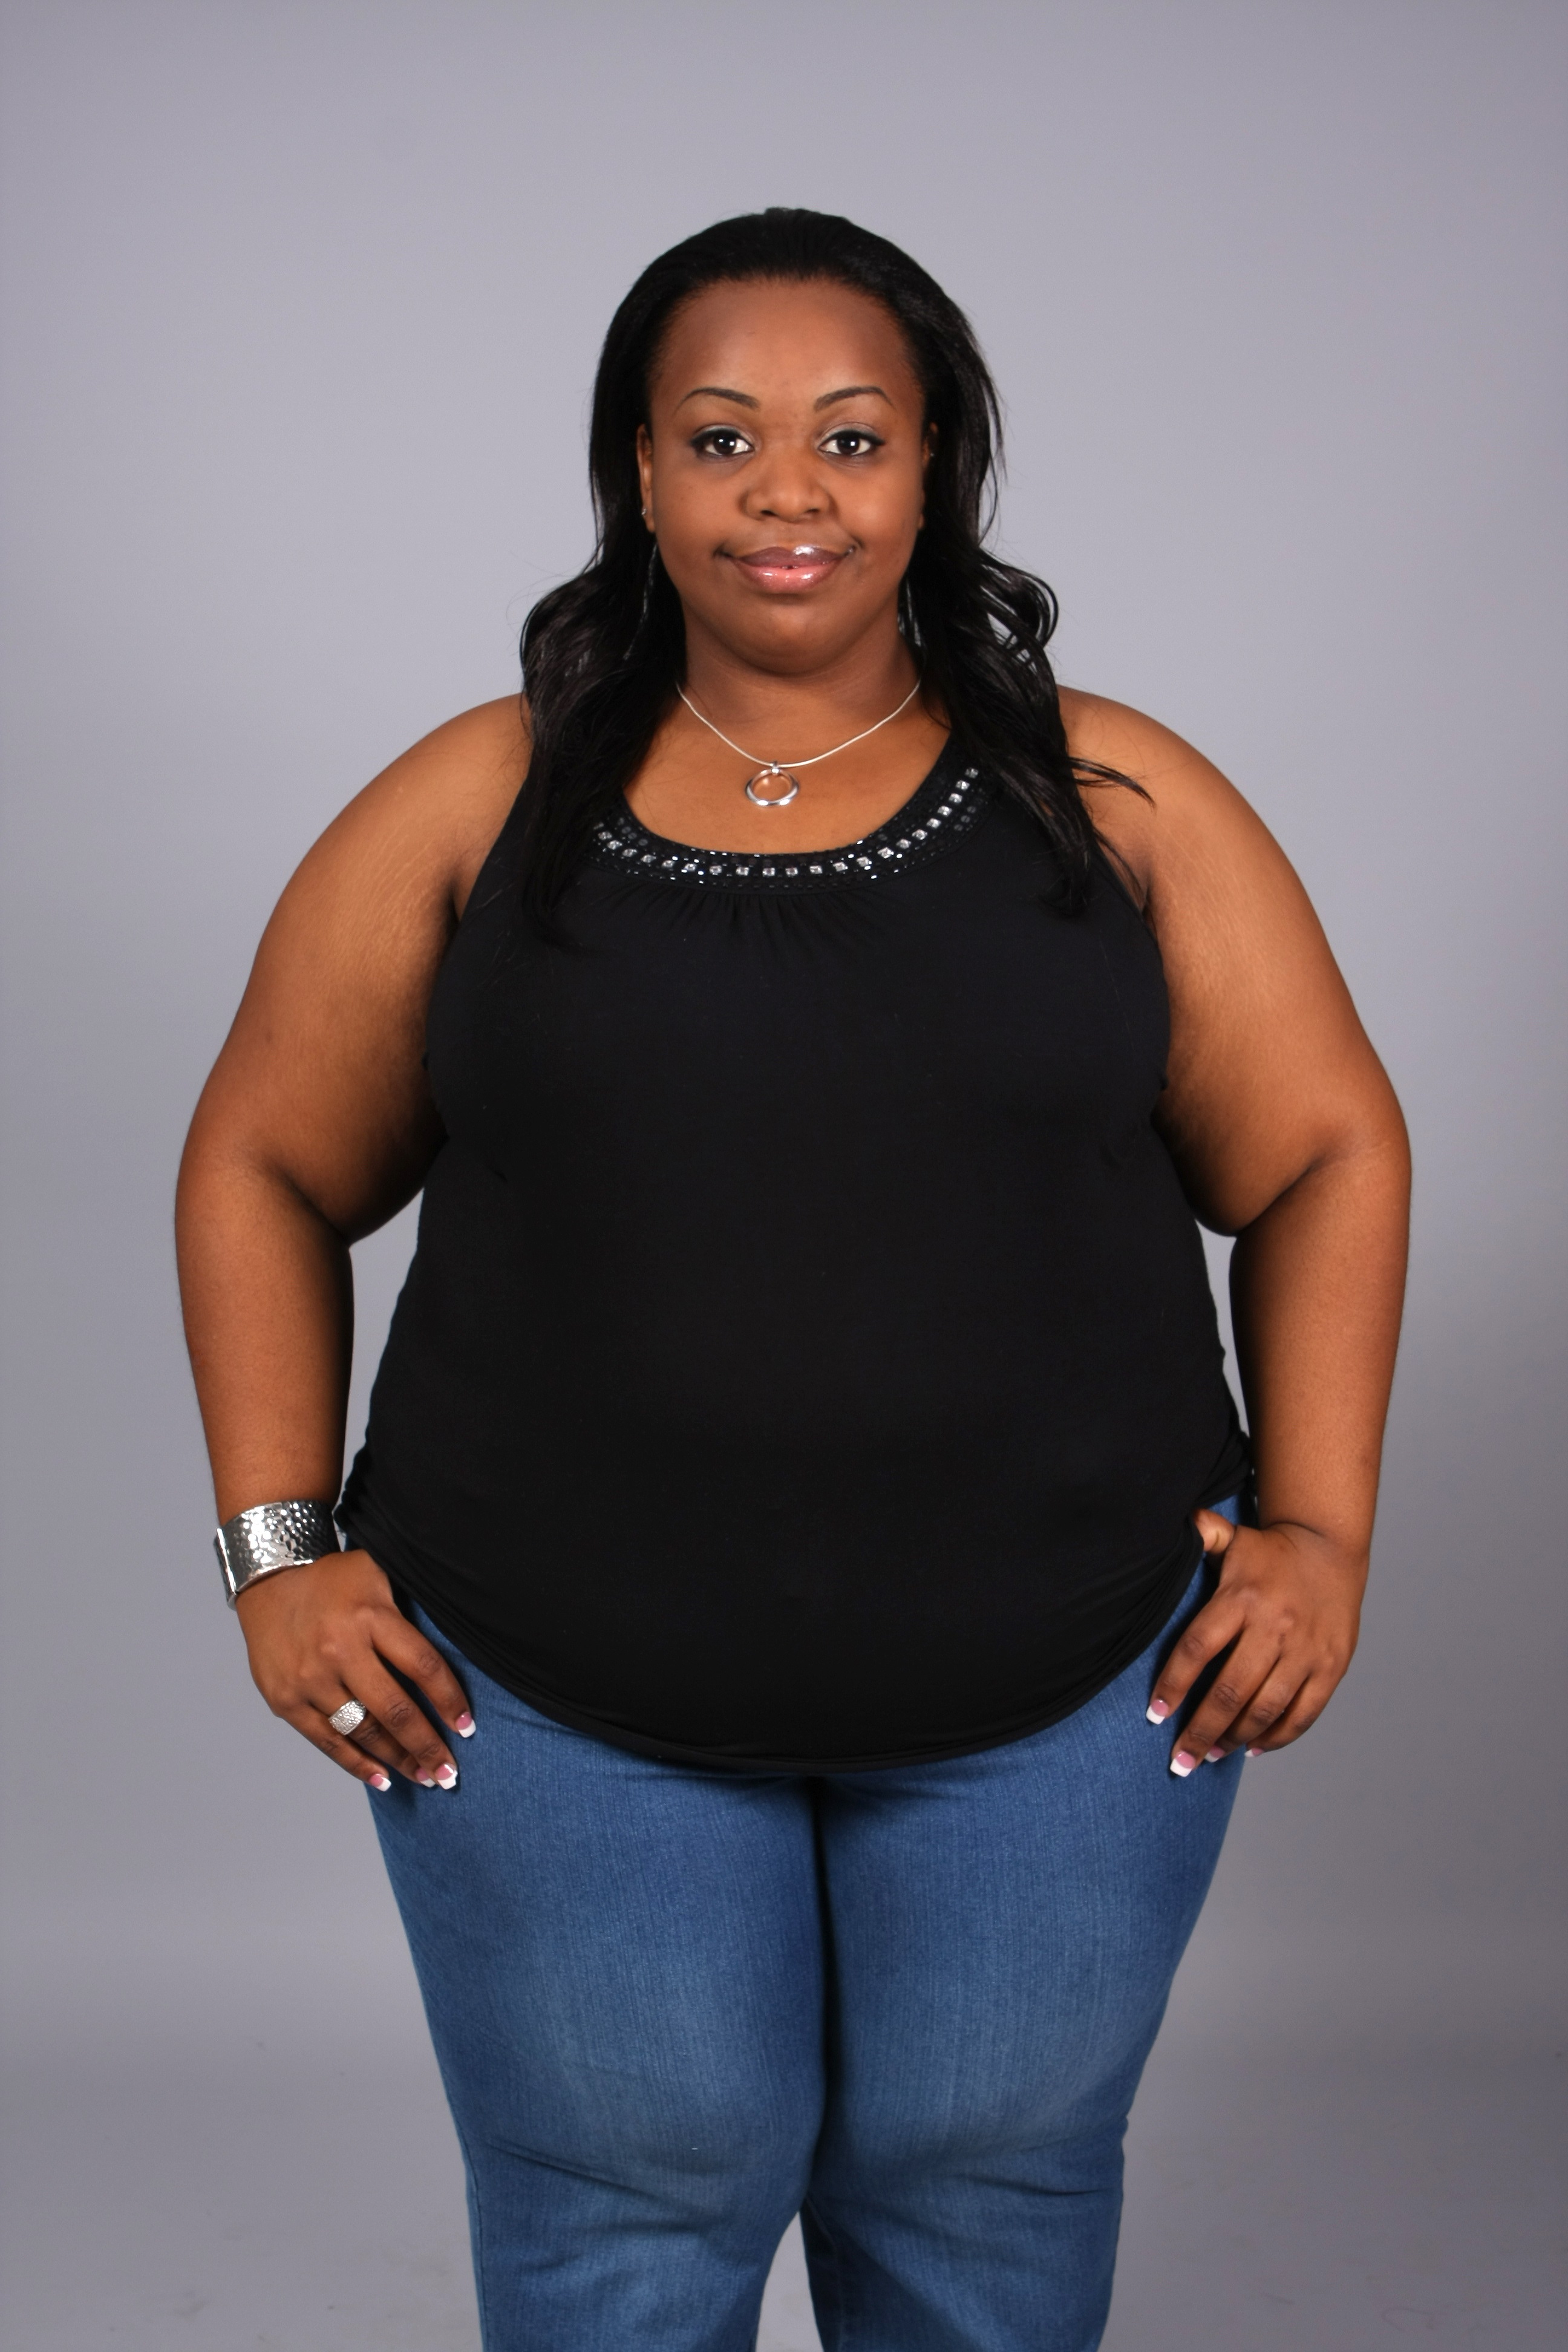 Obese Black Woman 2 